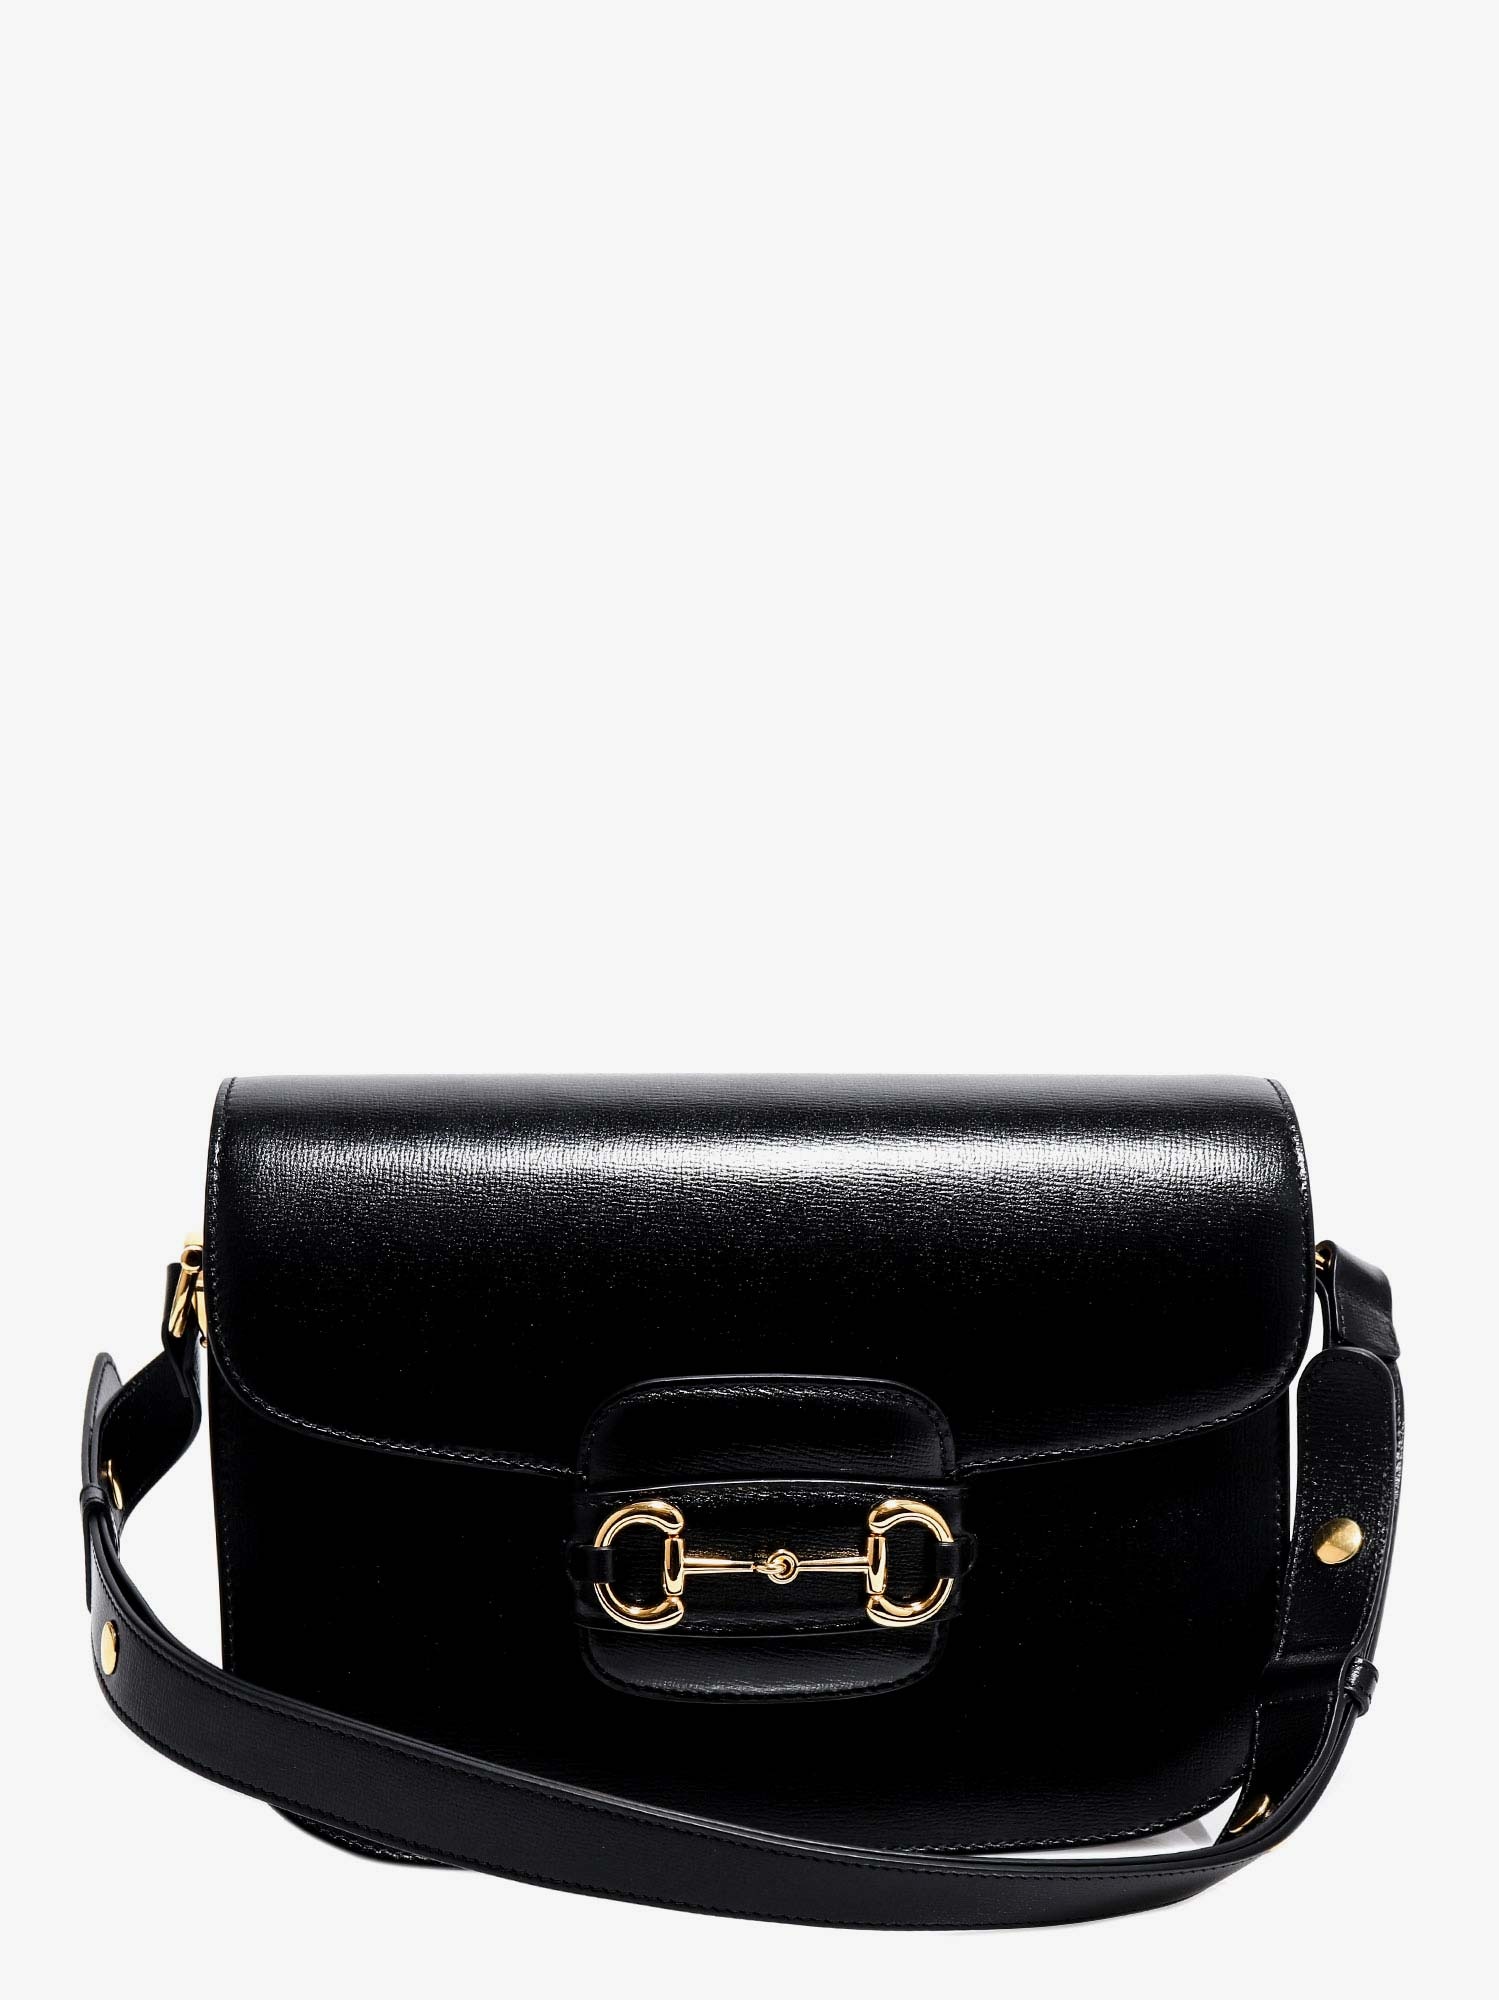 Gucci Woman Horsebit 1955 Woman Black Shoulder Bags - 1